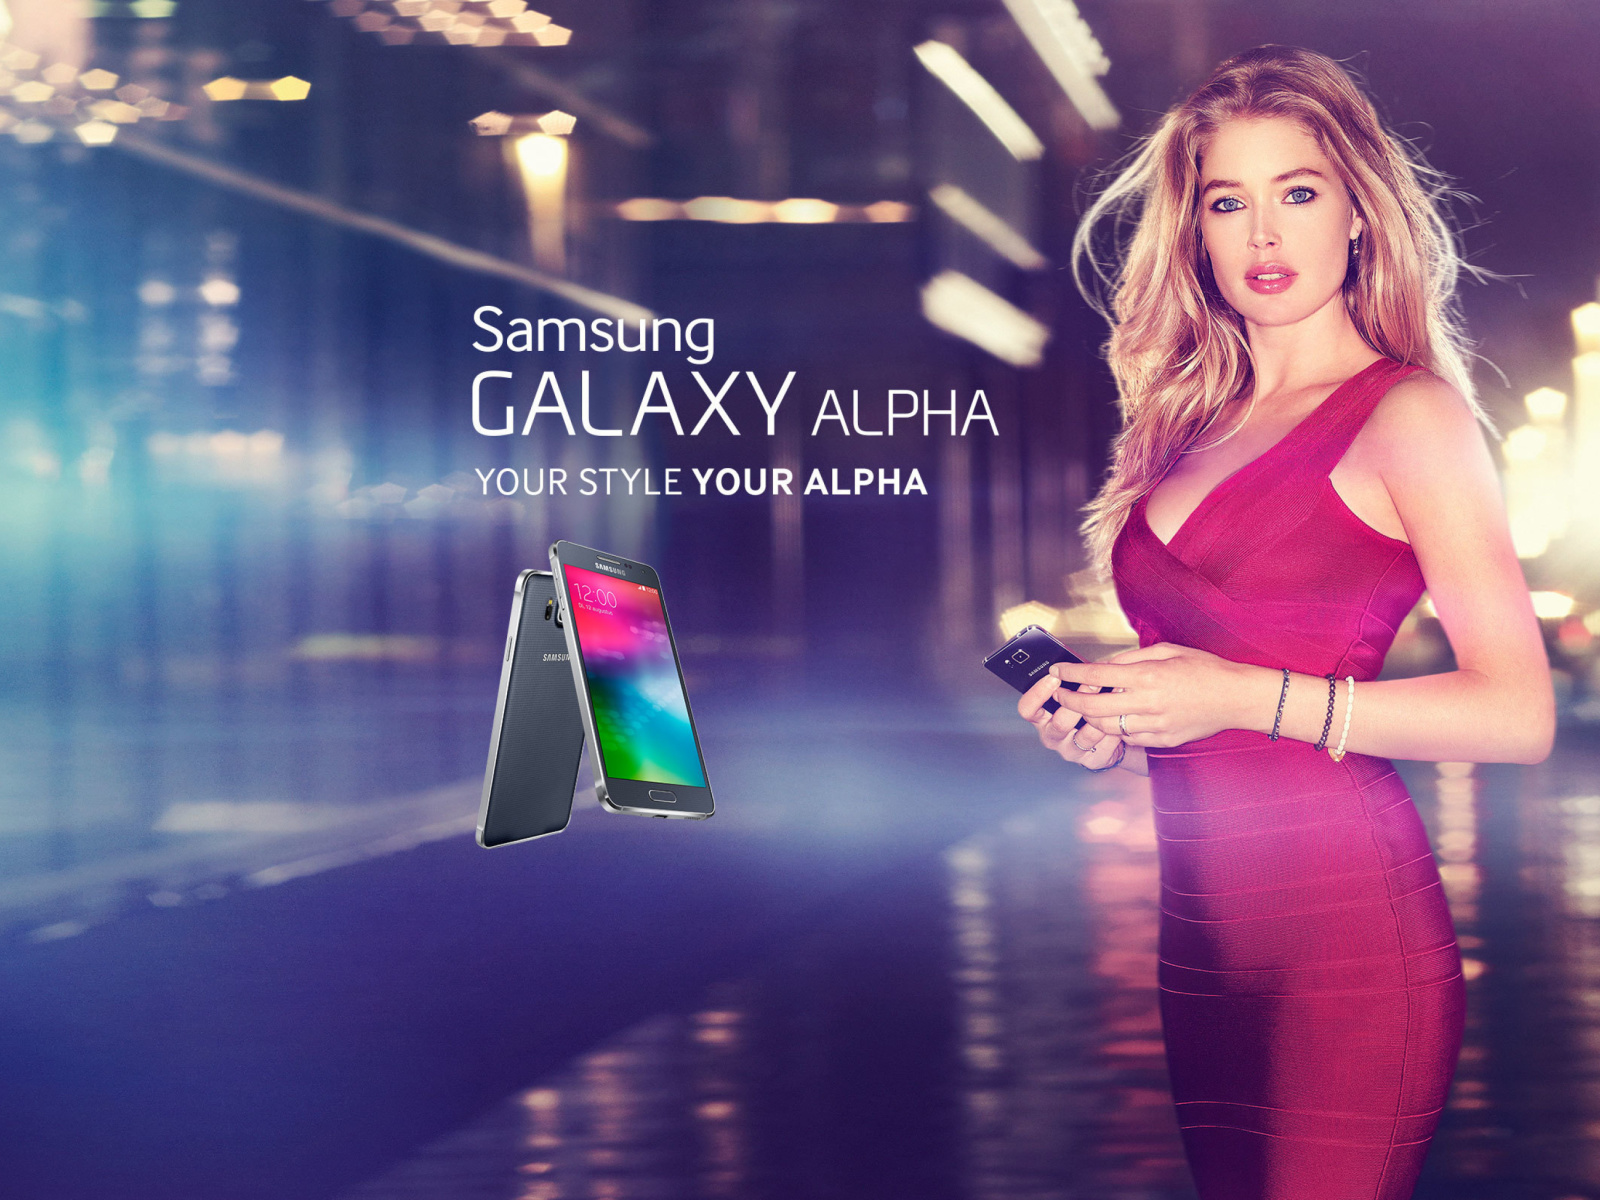 Samsung Galaxy Alpha Advertisement with Doutzen Kroes wallpaper 1600x1200